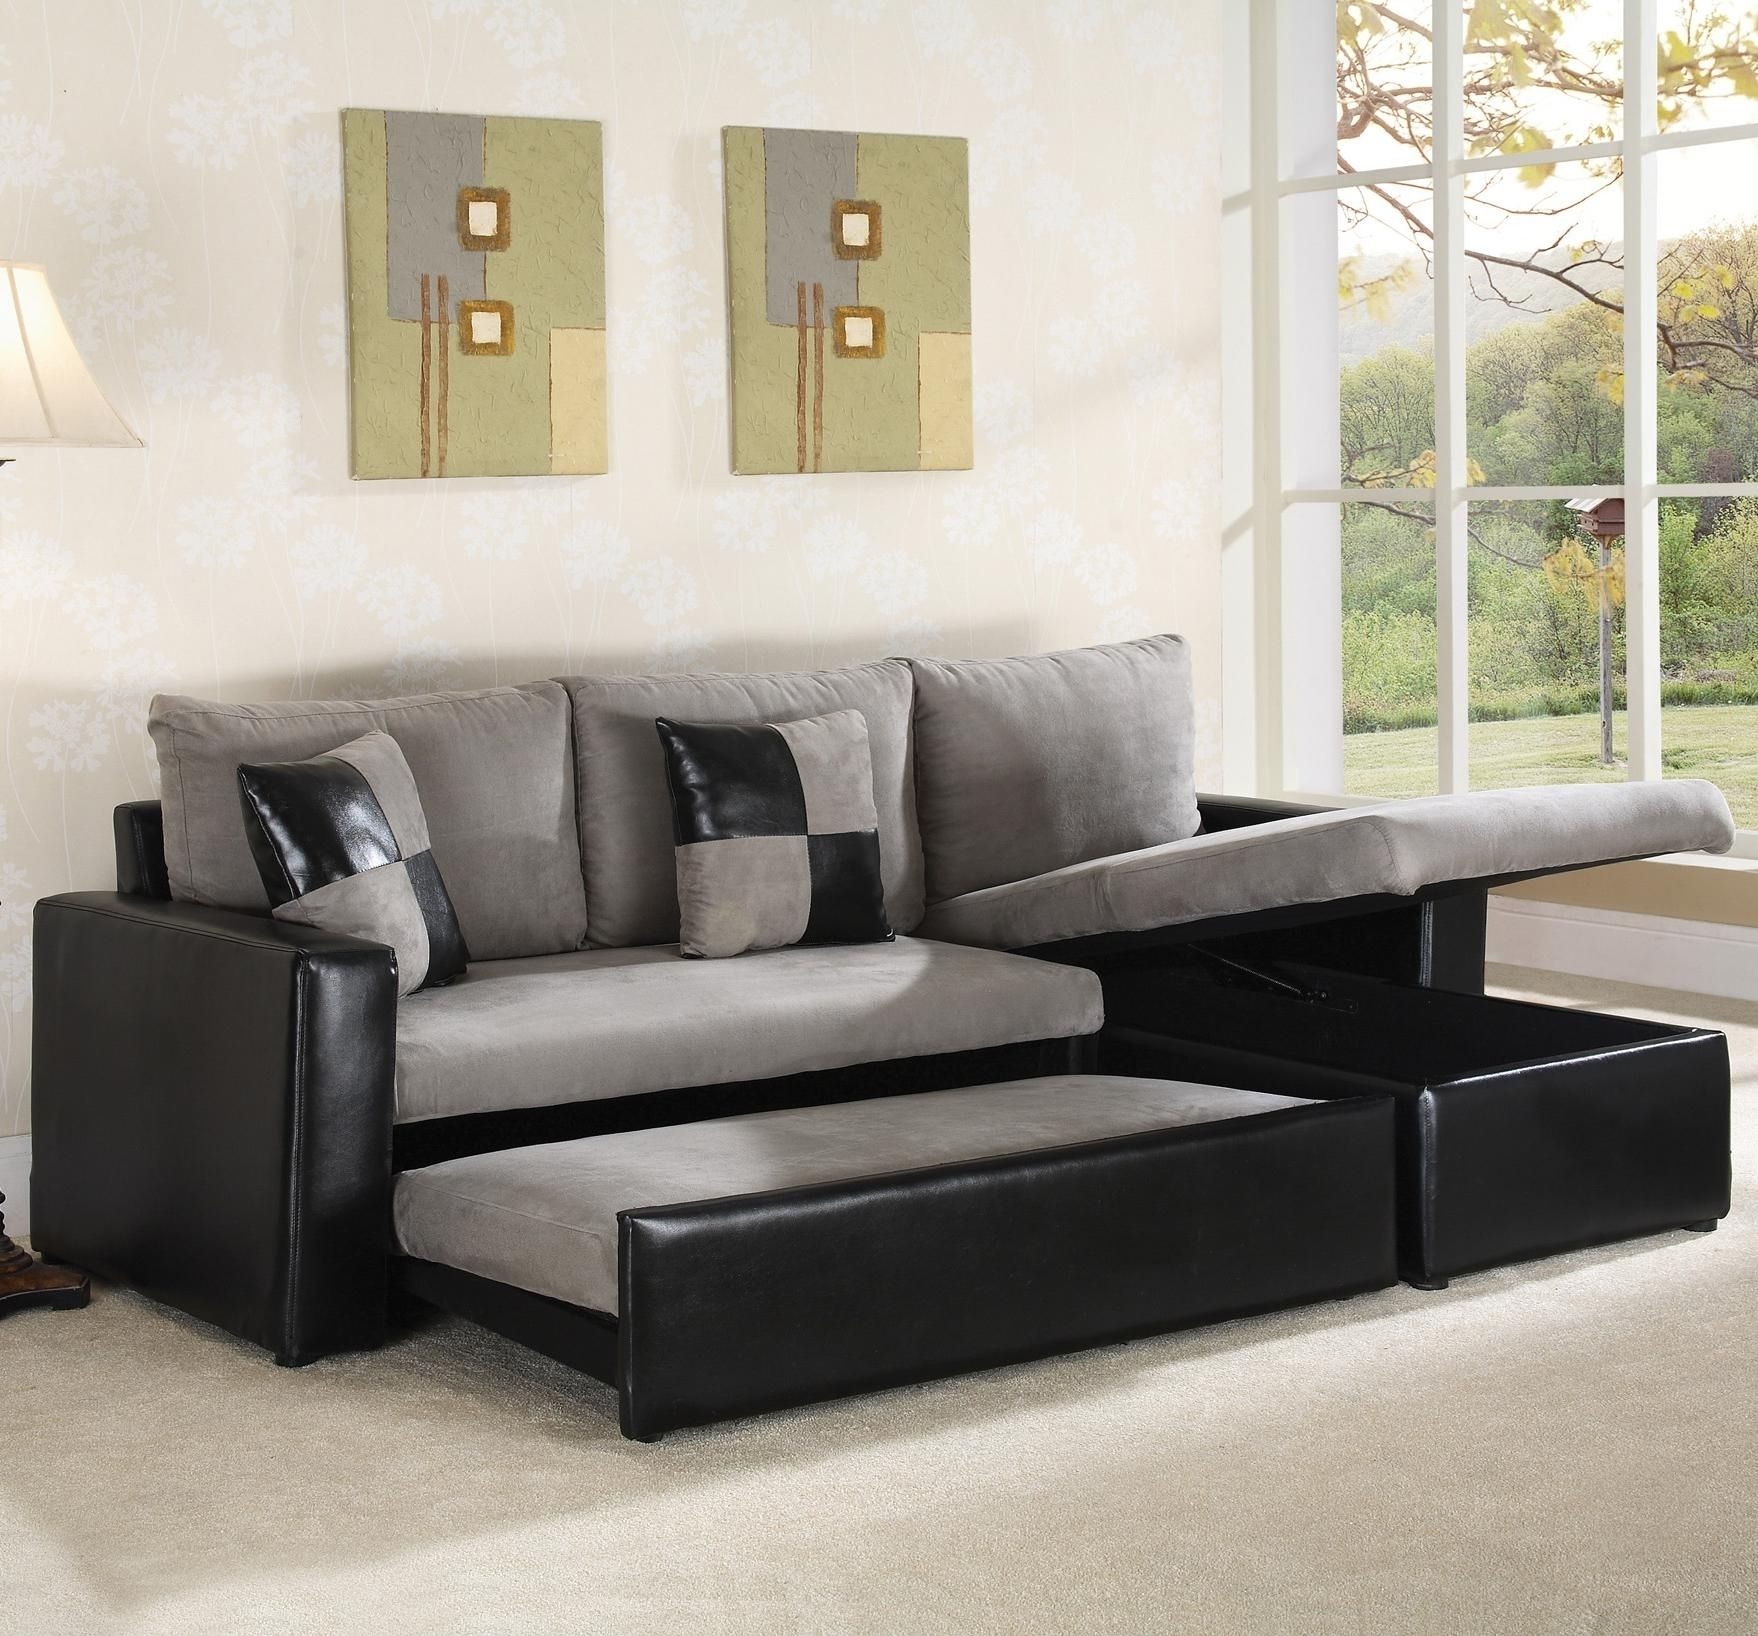 American Leather Sleeper Sofa Craigslist Ansugallery Pertaining To Craigslist Sleeper Sofa (Photo 5 of 12)